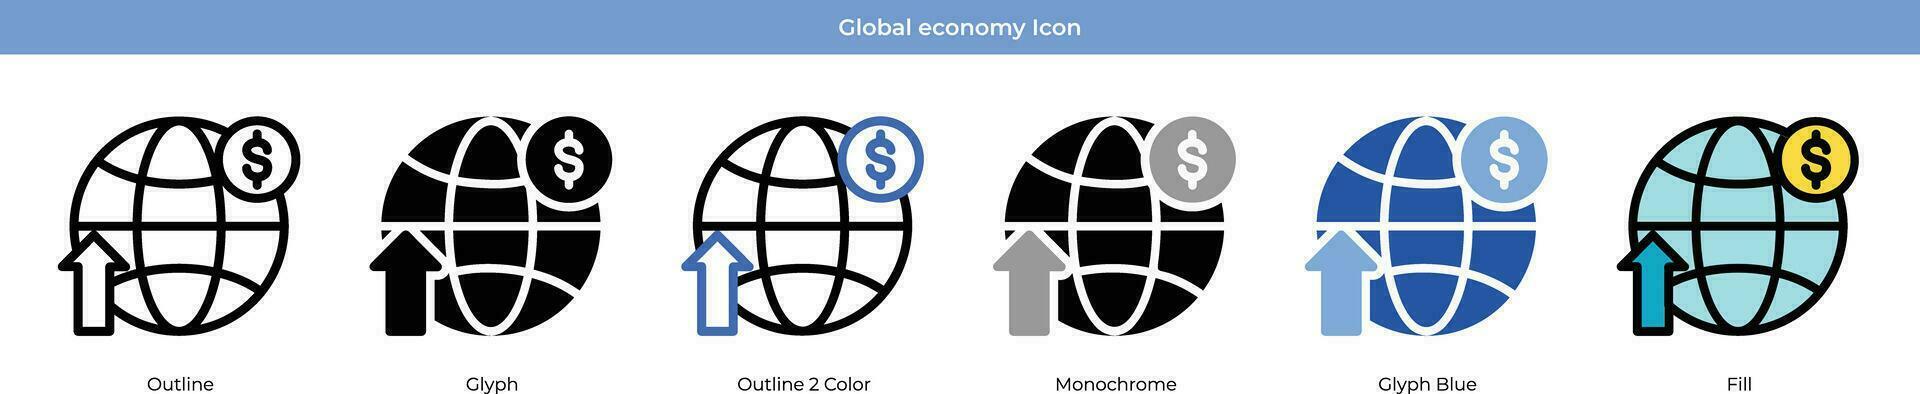 Global economy Icon Set vector